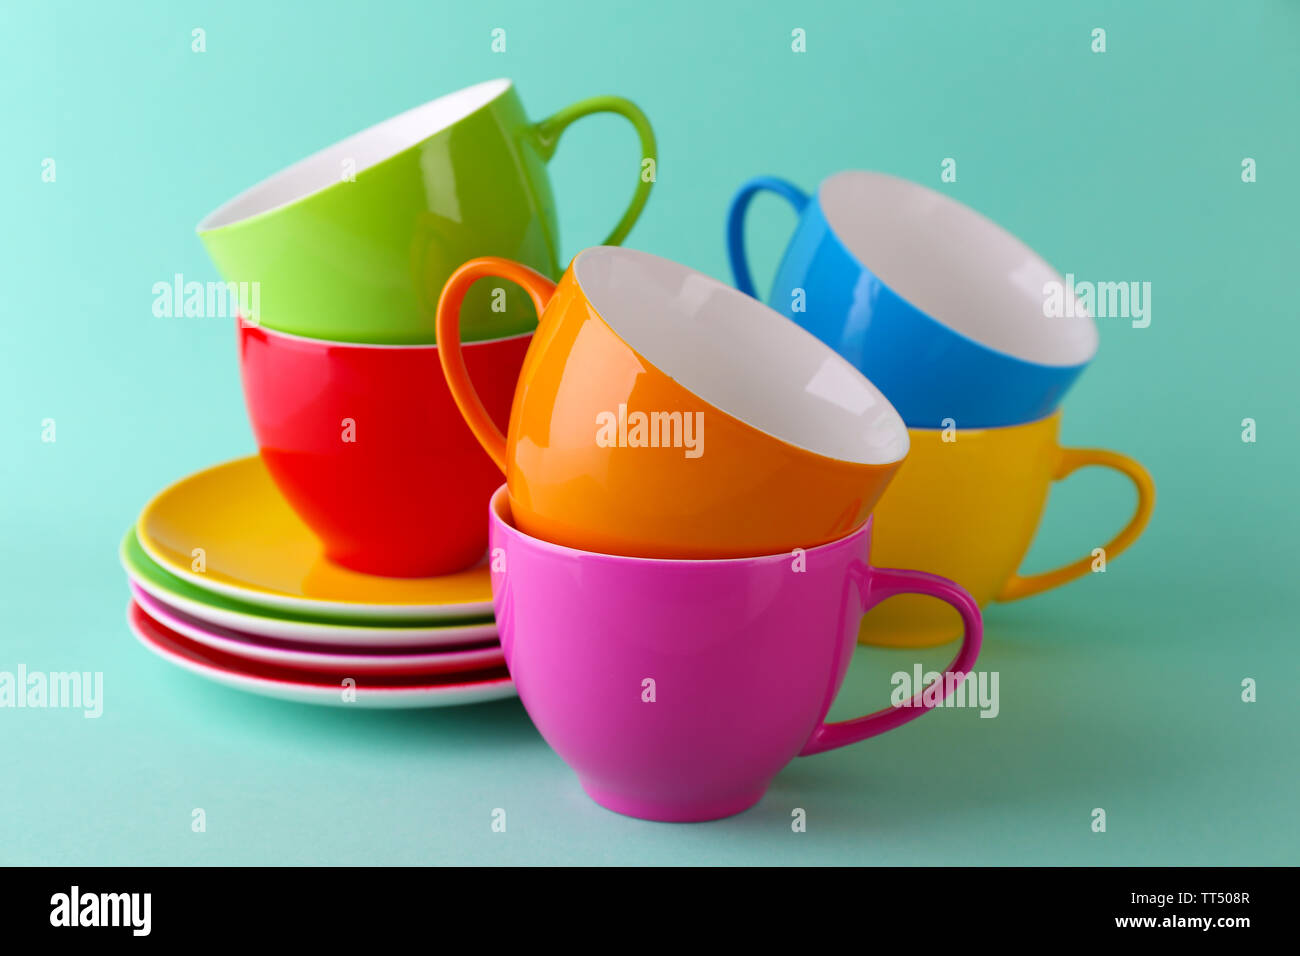 Bunte Tassen und Untertassen auf farbigen Hintergrund Stockfotografie -  Alamy